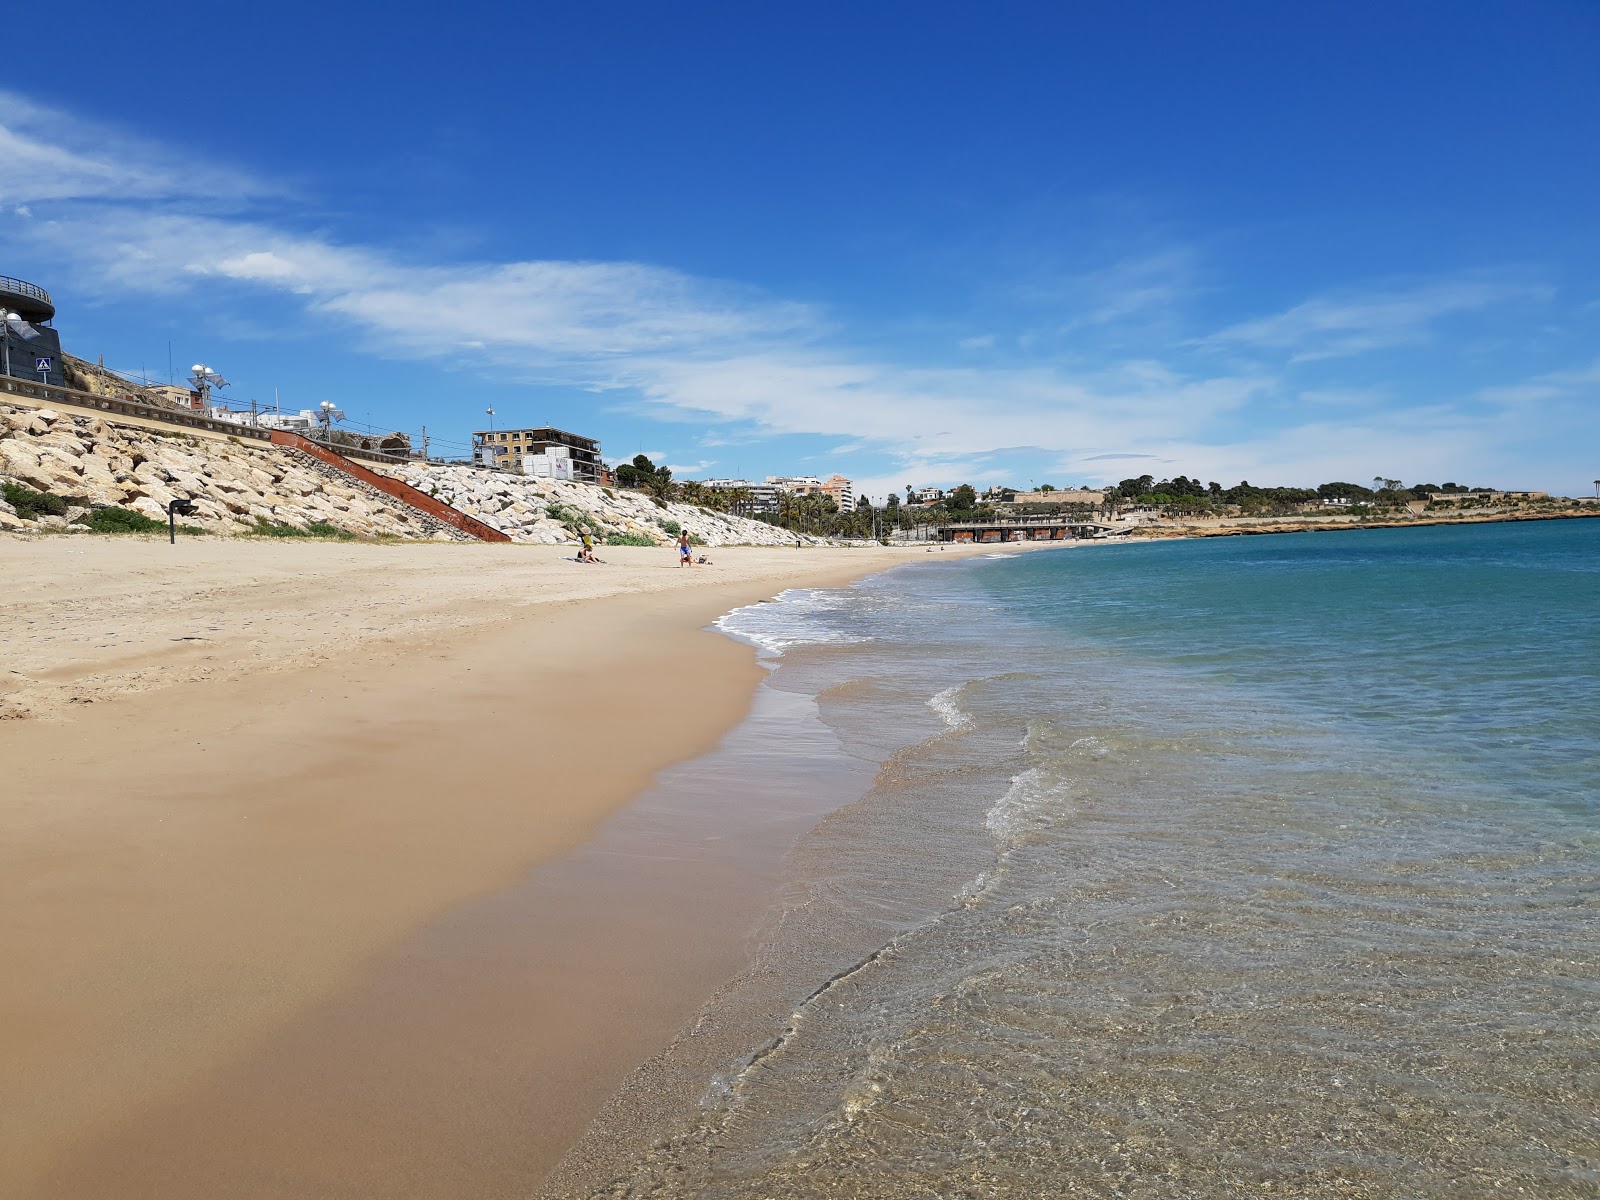 Platja del Miracle'in fotoğrafı kahverengi kum yüzey ile